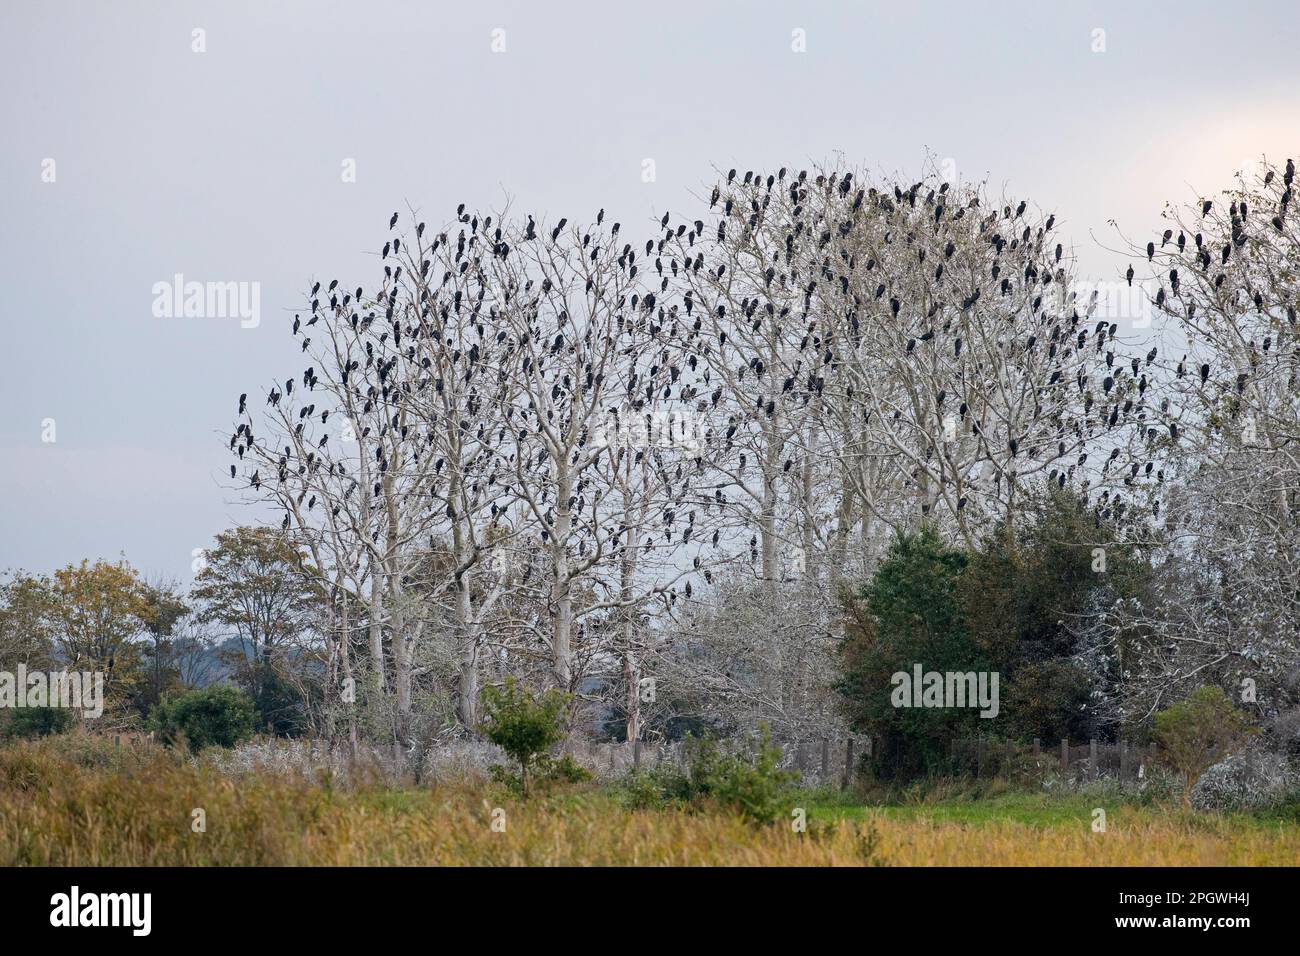 Colonia di cormorani grandi (Phalacrocorax carbo) arroccato in alberi morti in palude / palude in autunno / caduta Foto Stock